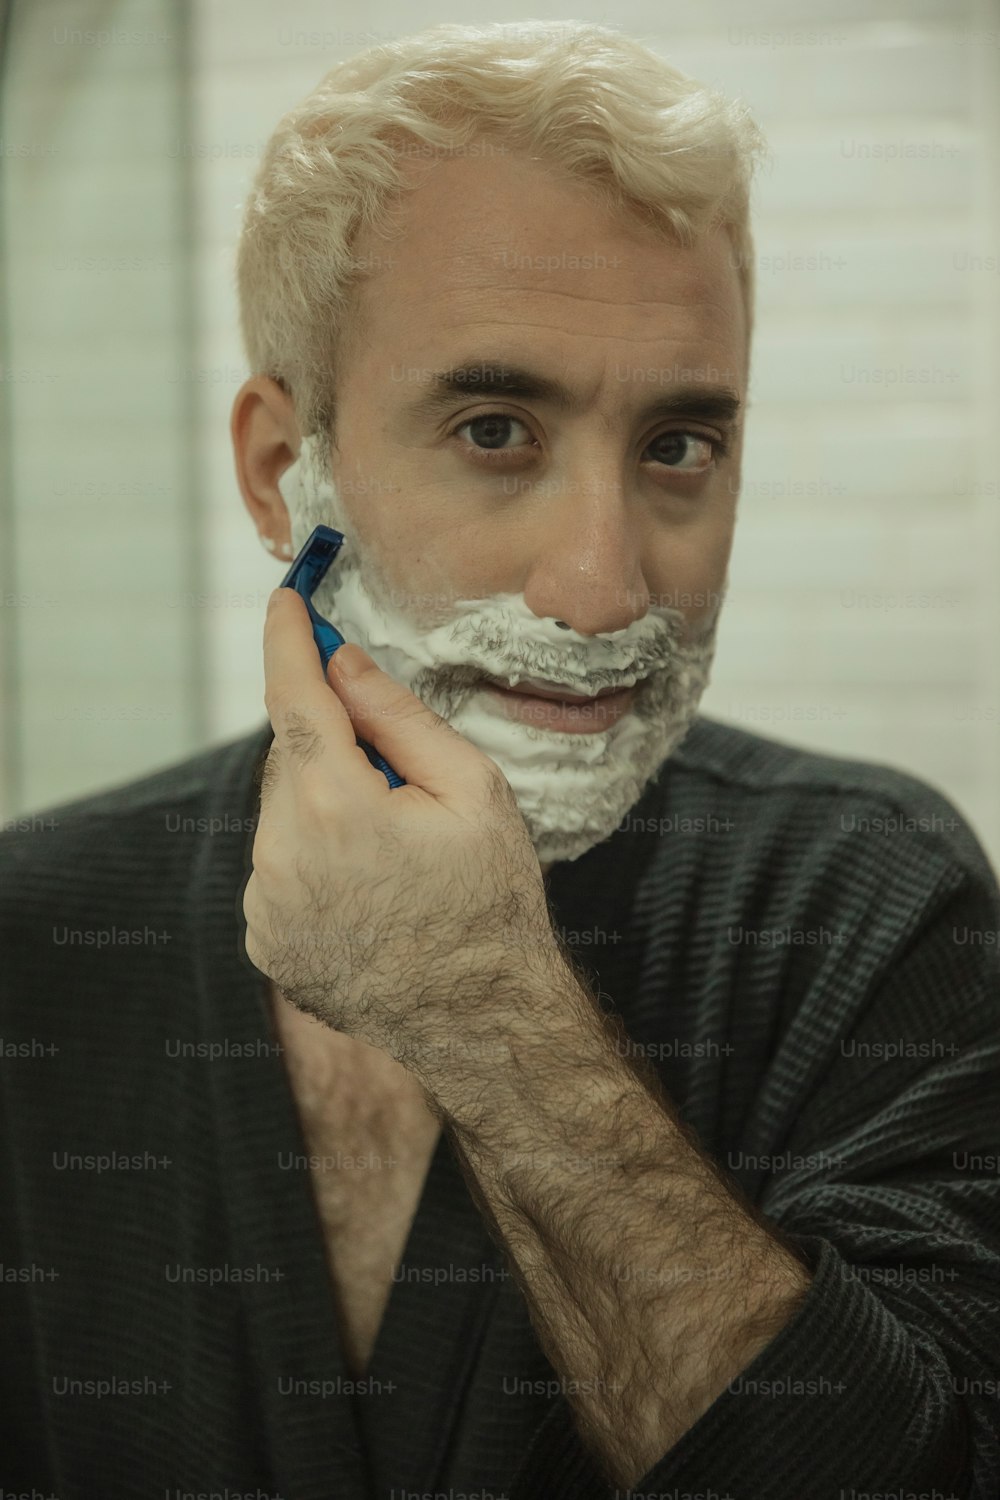 Un homme se rase le visage avec un rasoir